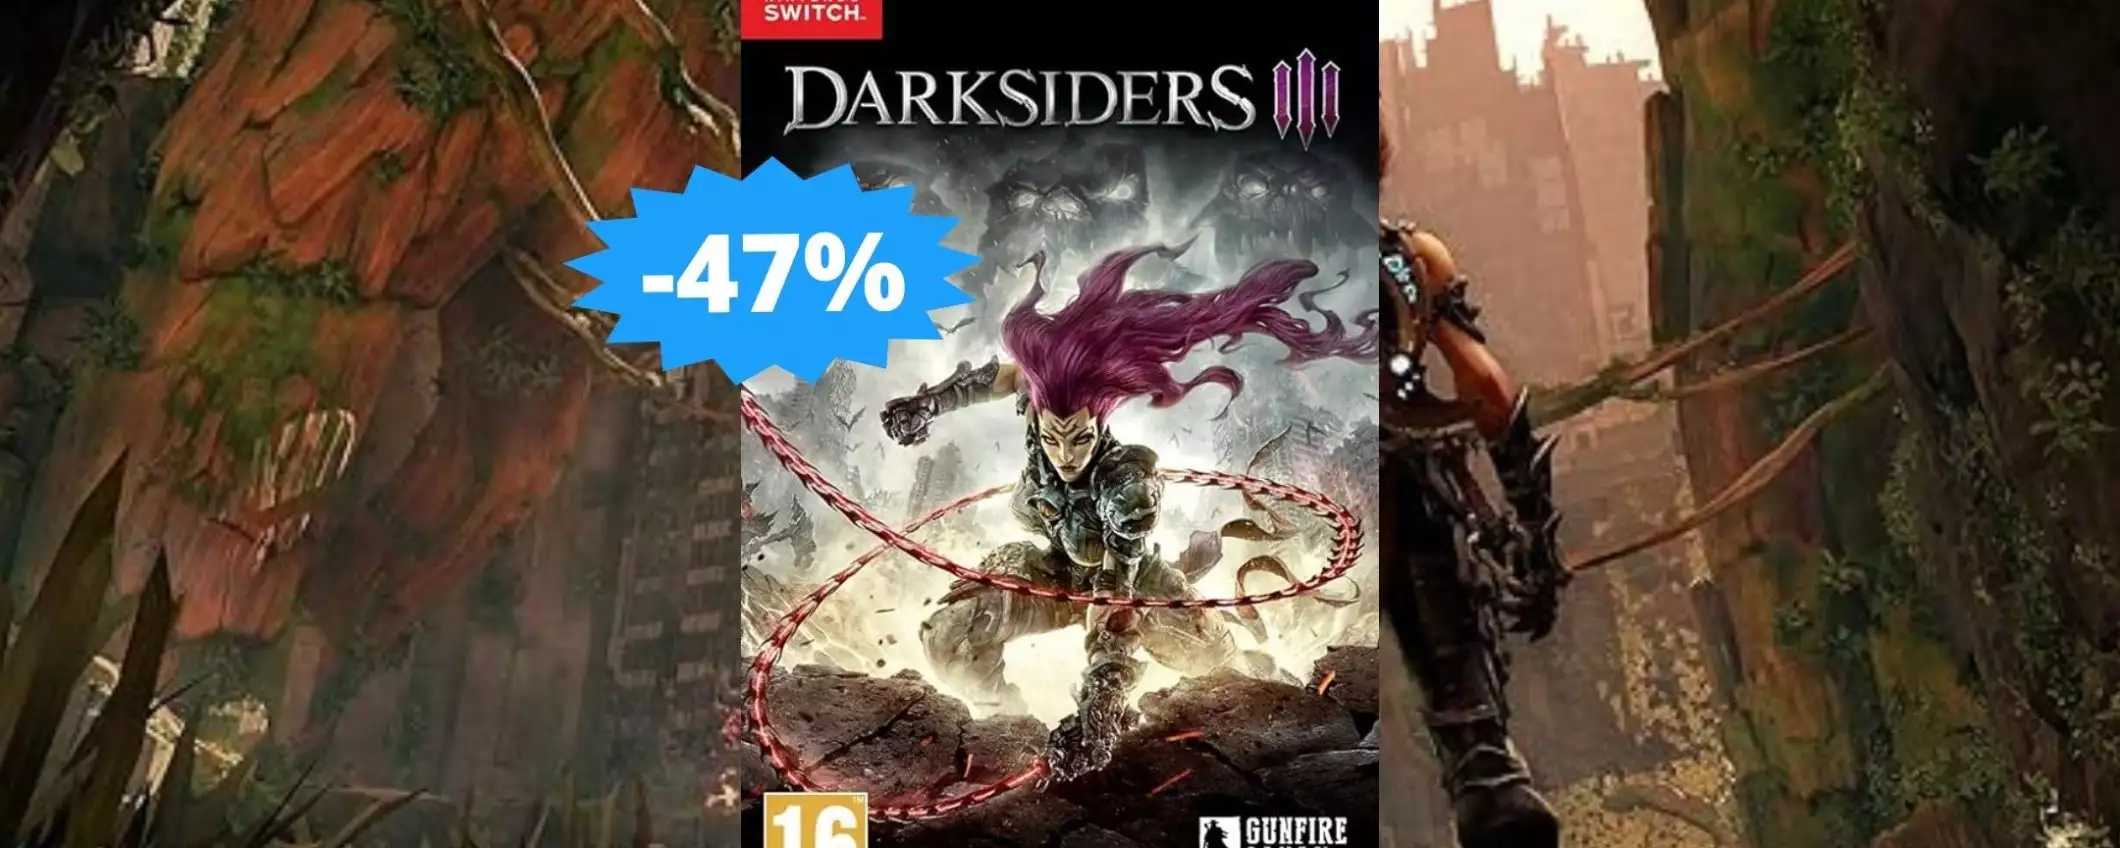 Darksiders III per Switch: sconto EPICO del 47% su Amazon